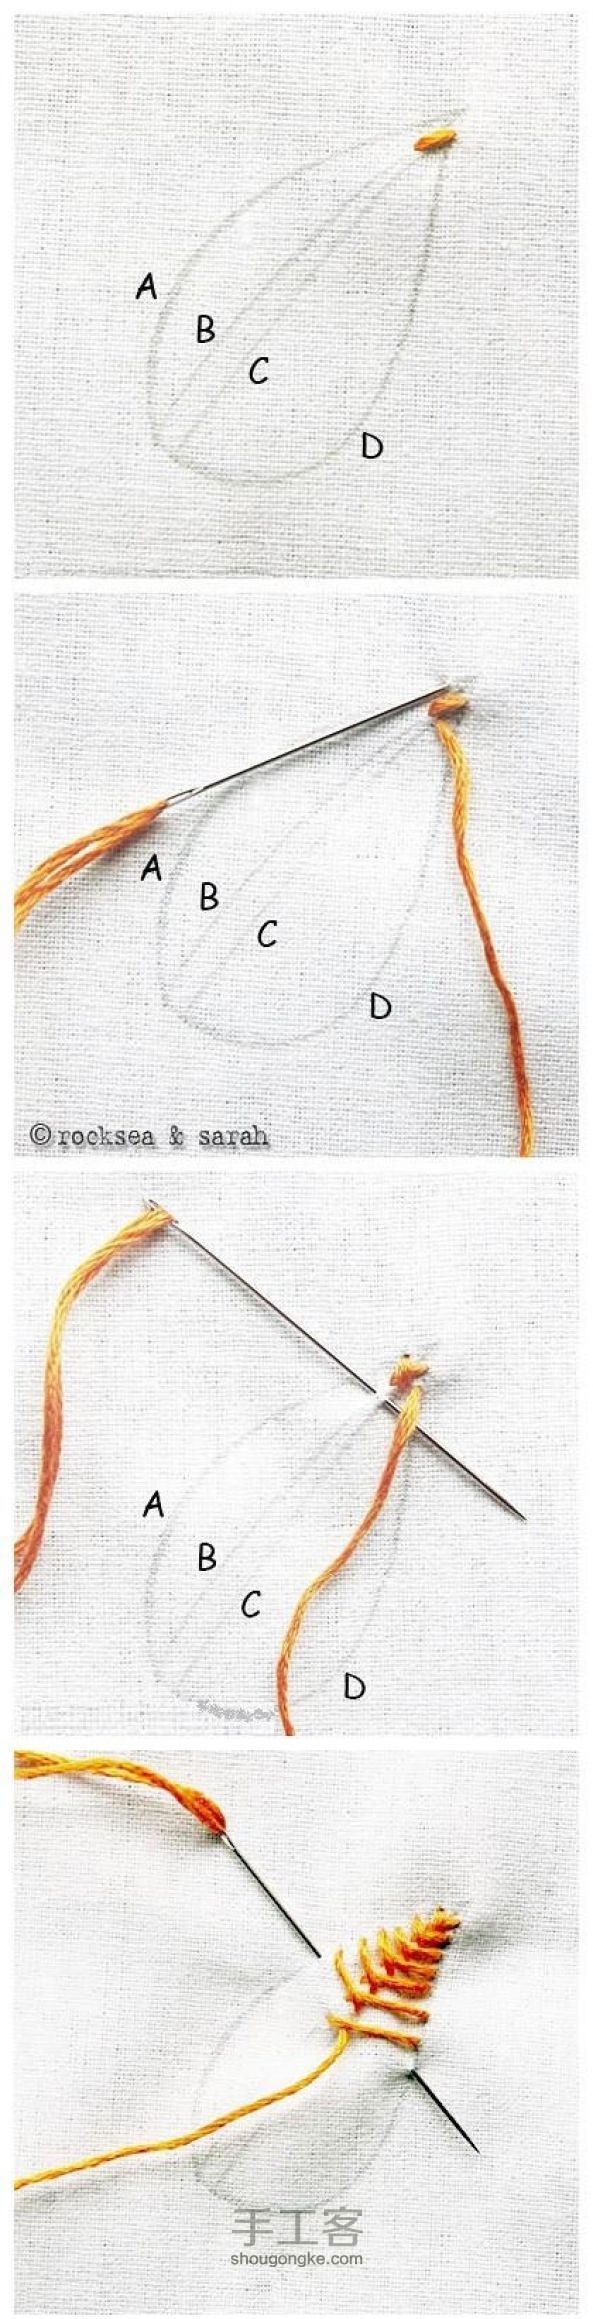 可爱实用的布艺装饰叶子的手缝教程 第2步